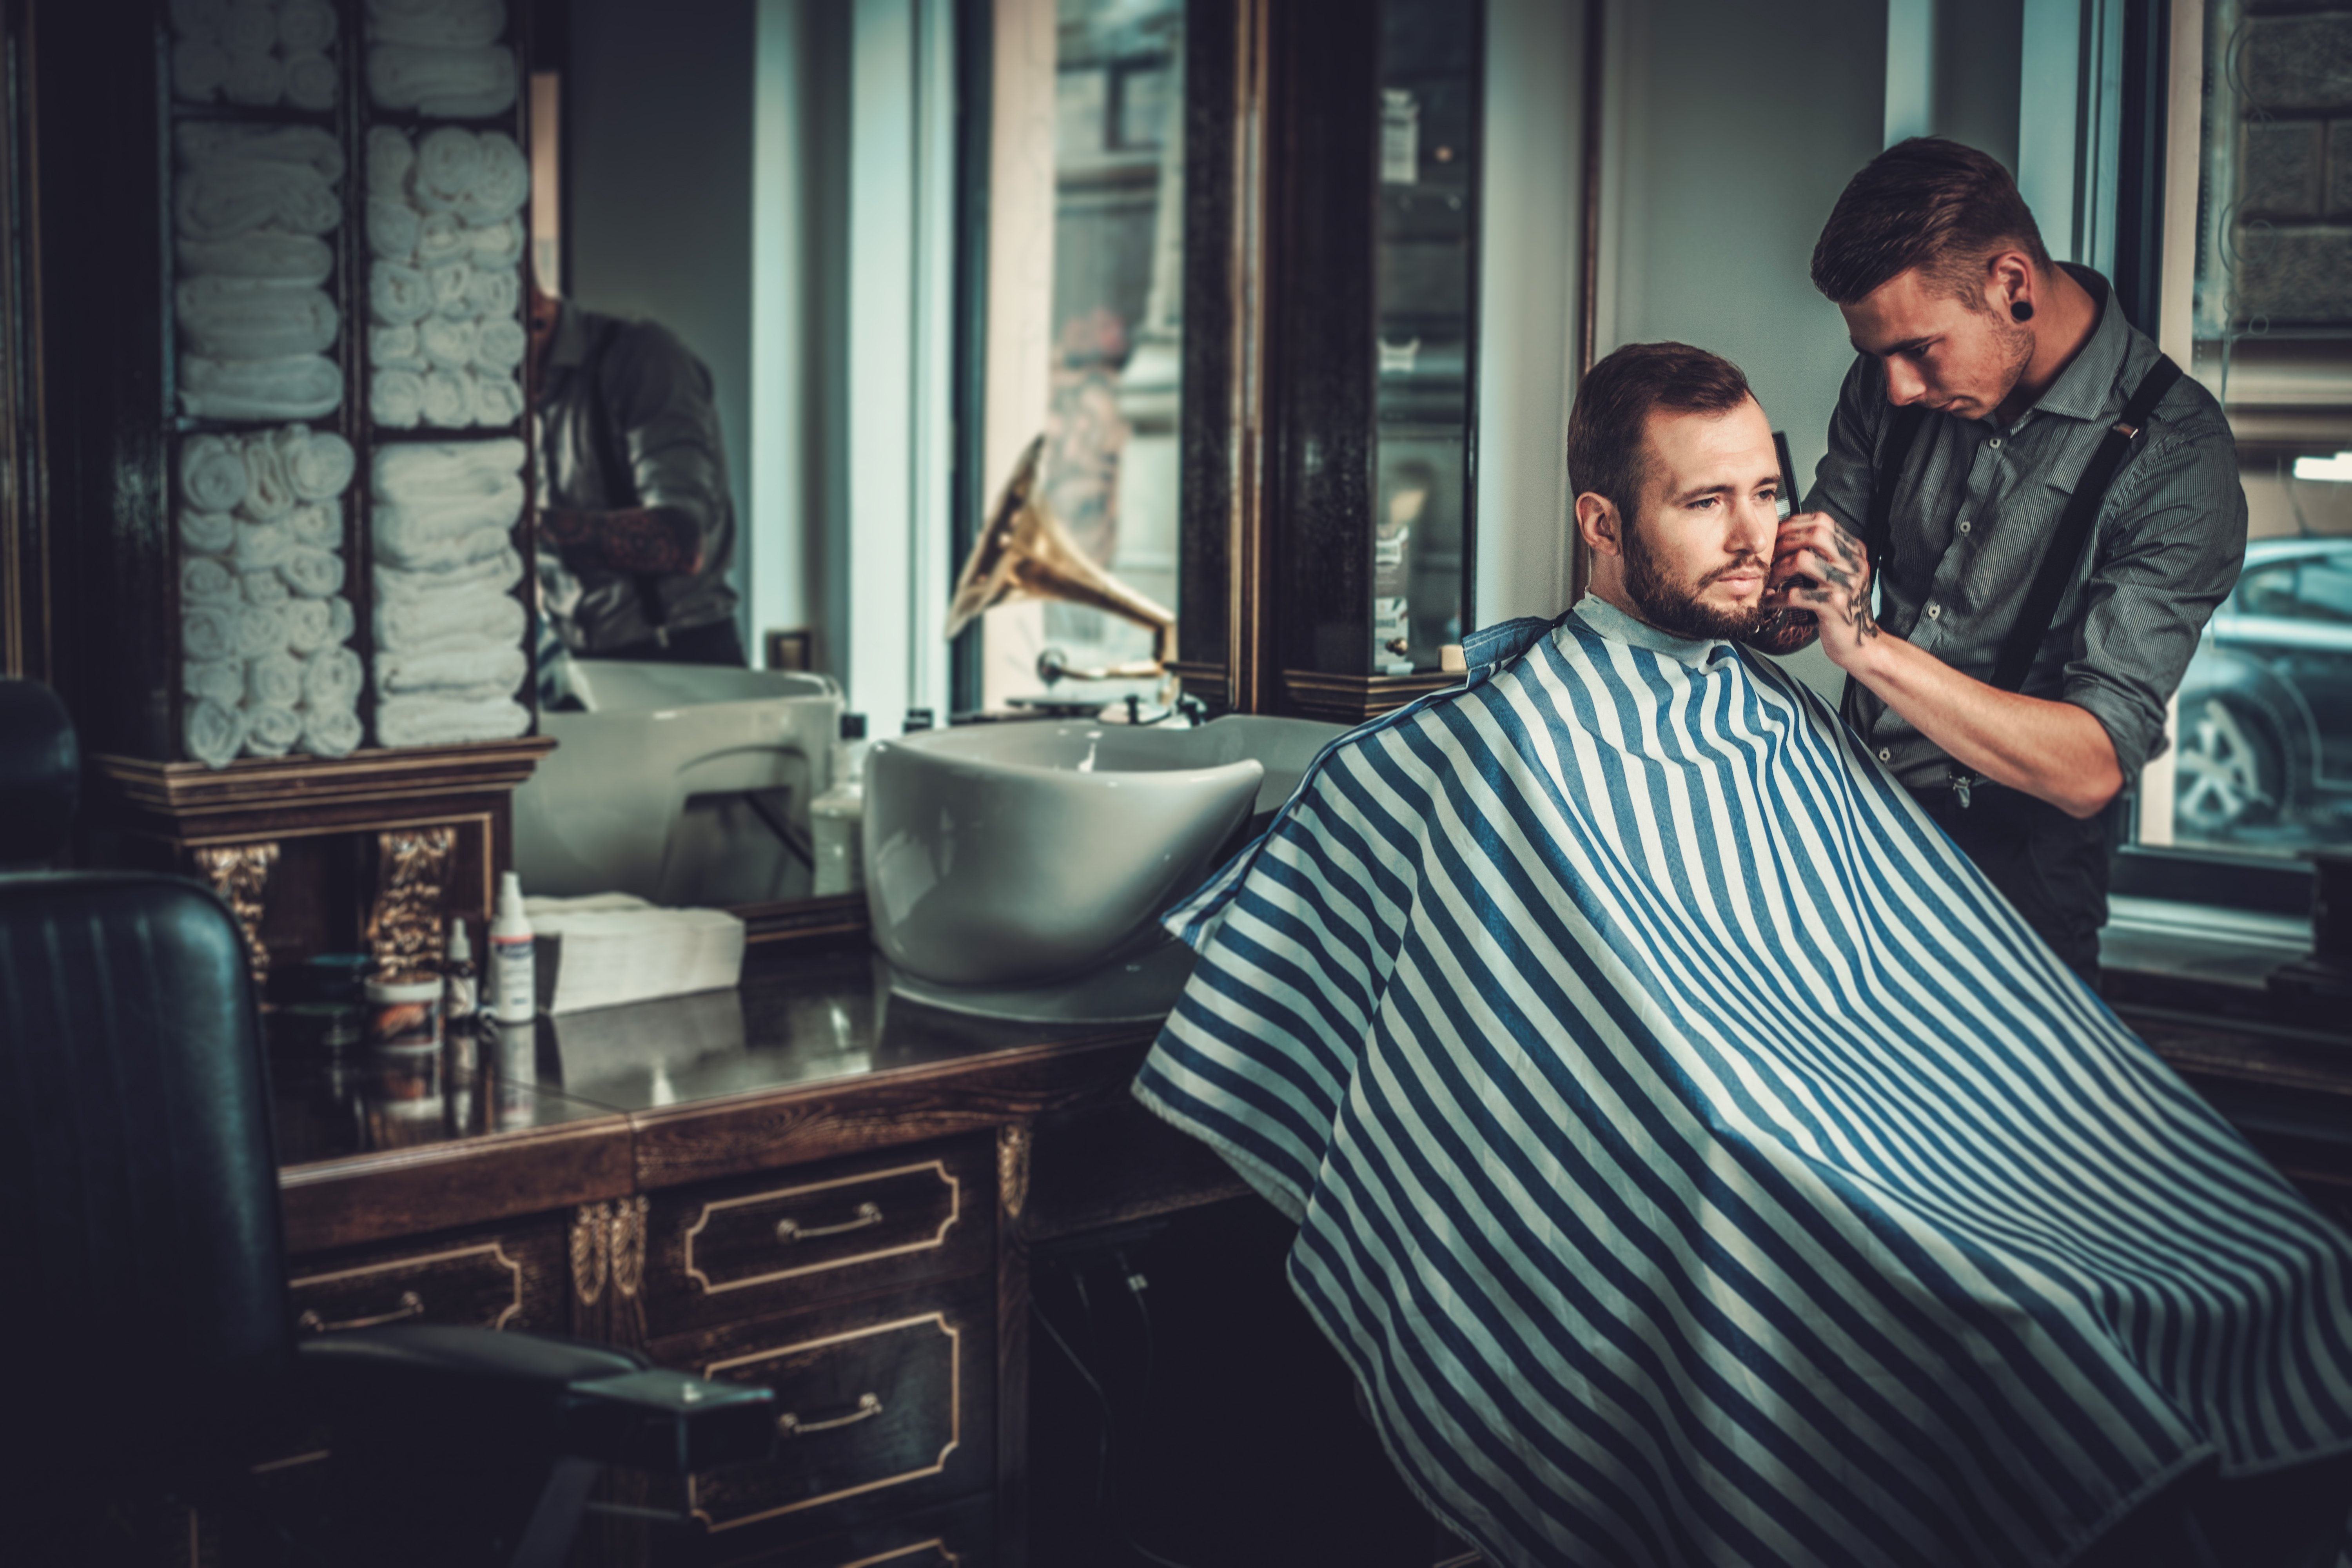 barber cutting a man's hair